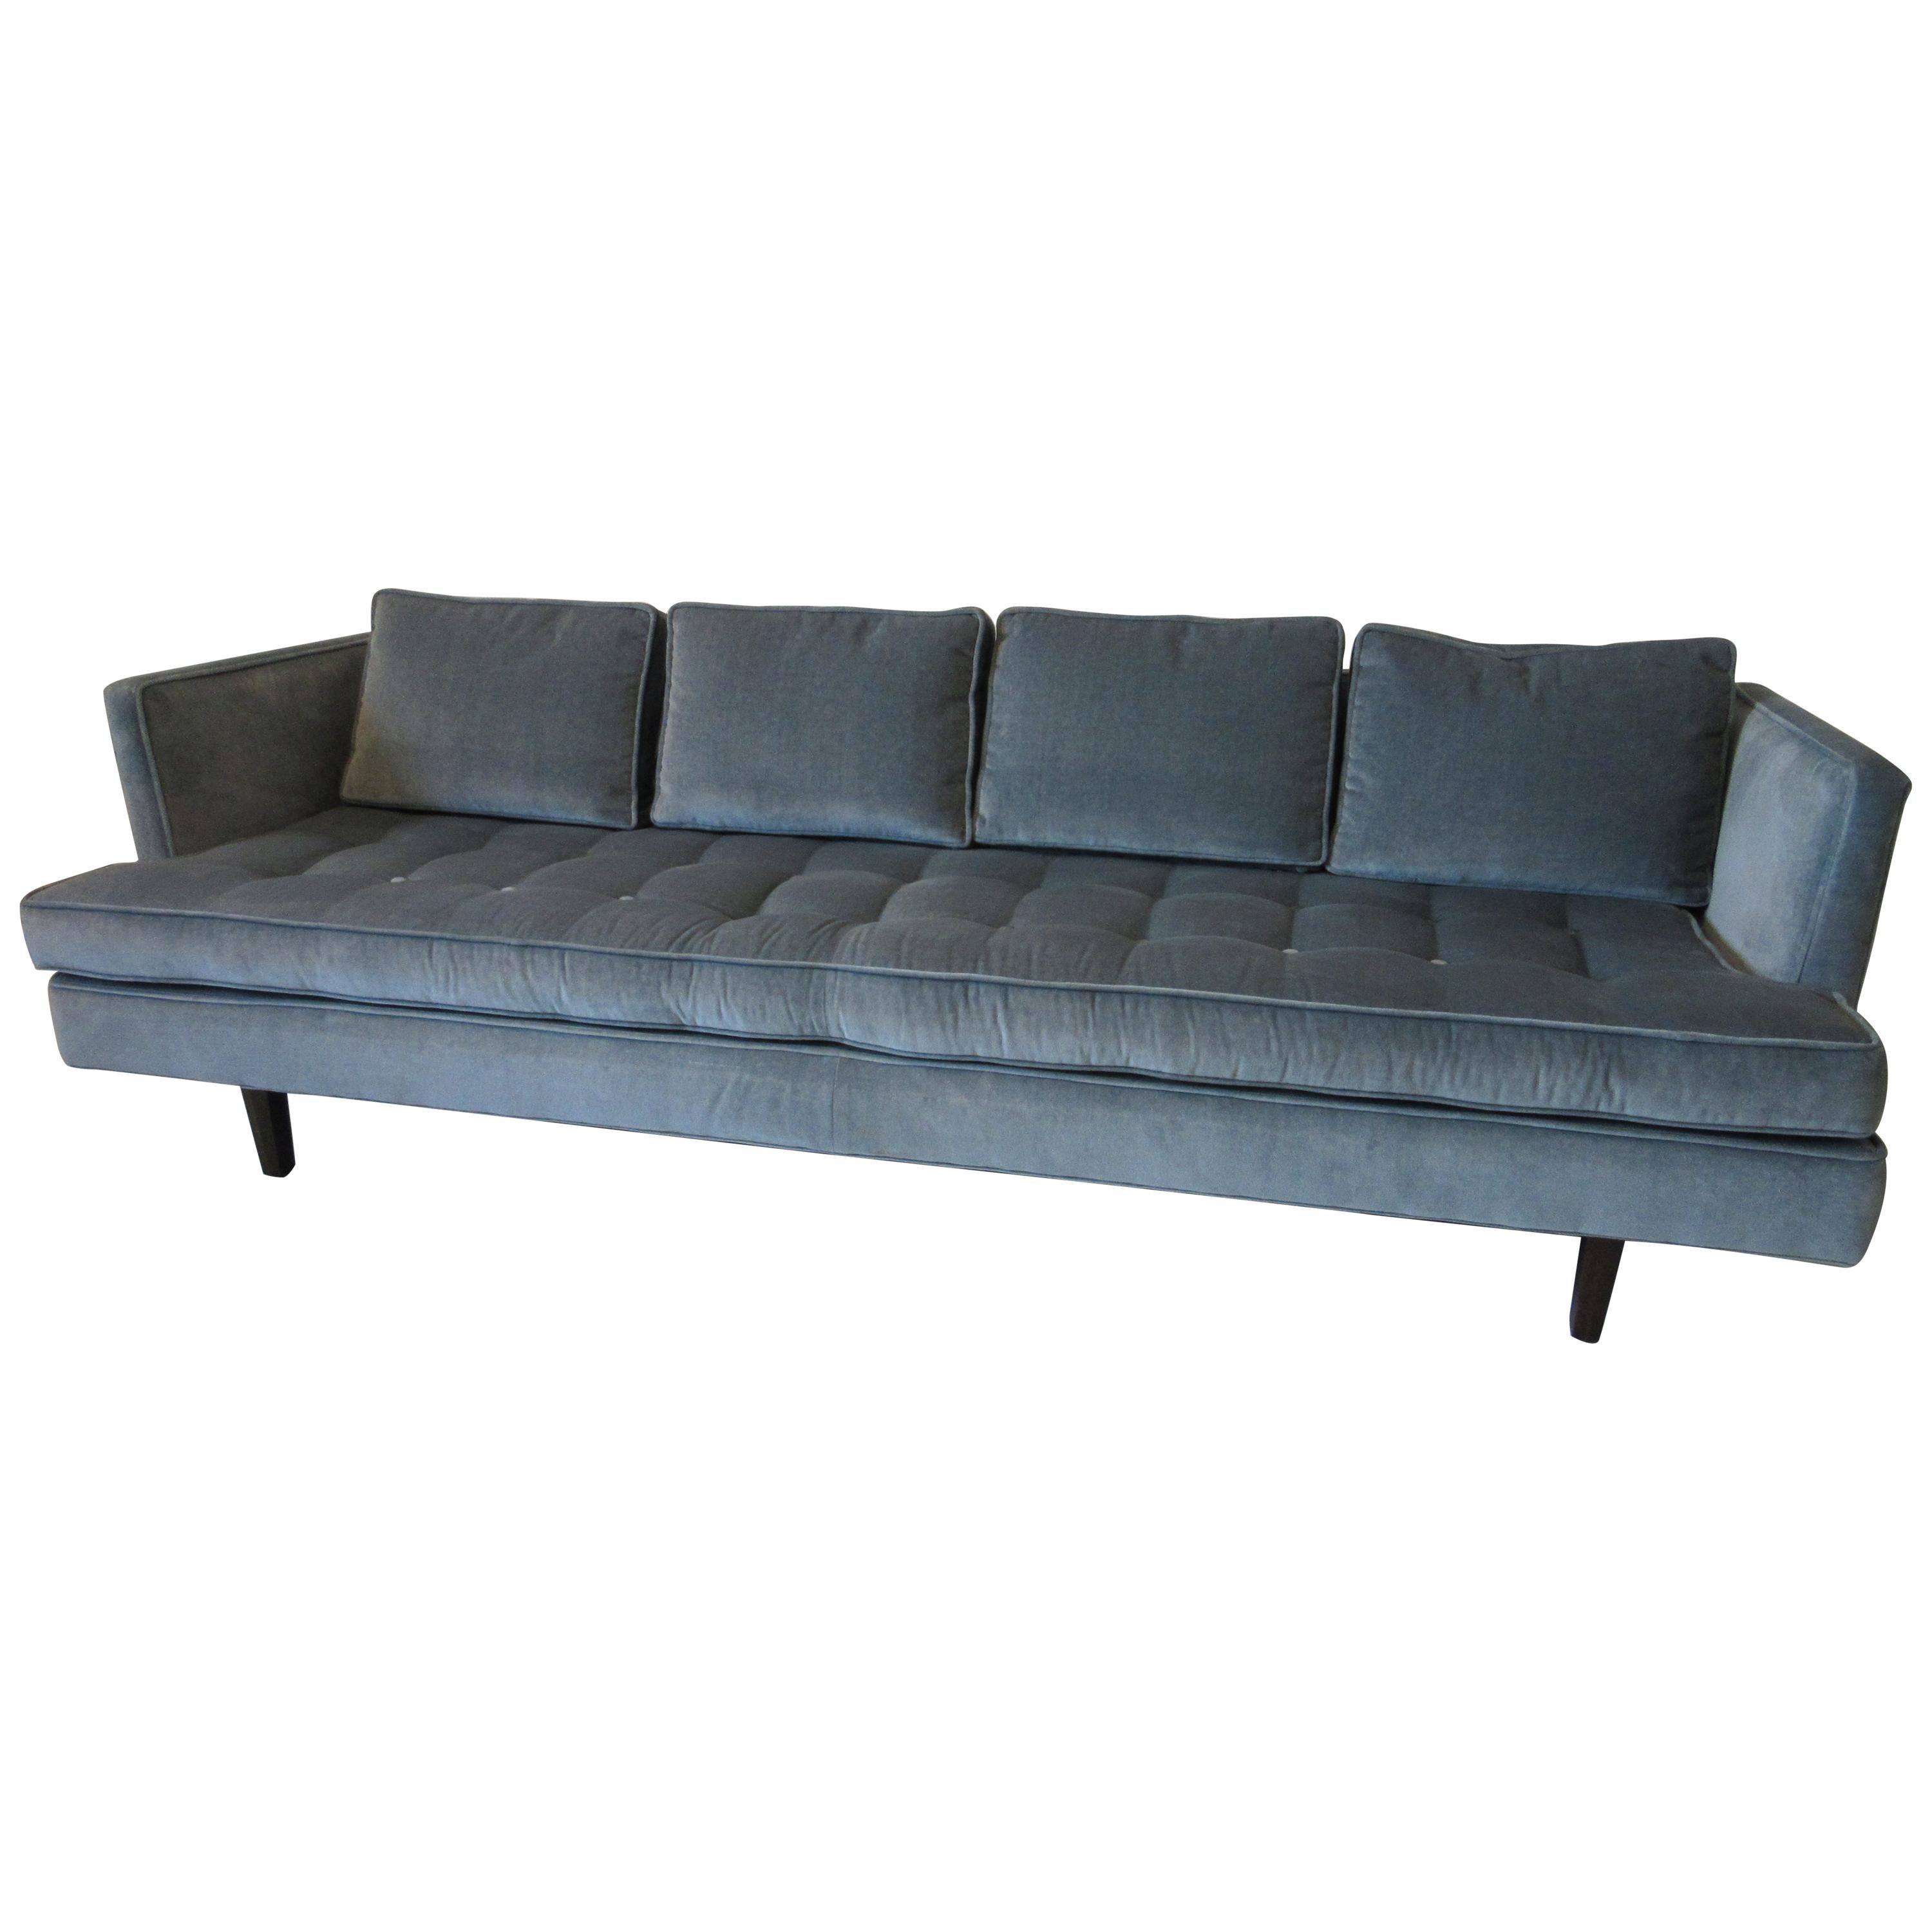 Dunbar Sofa Style # 520 by Edward Wormley